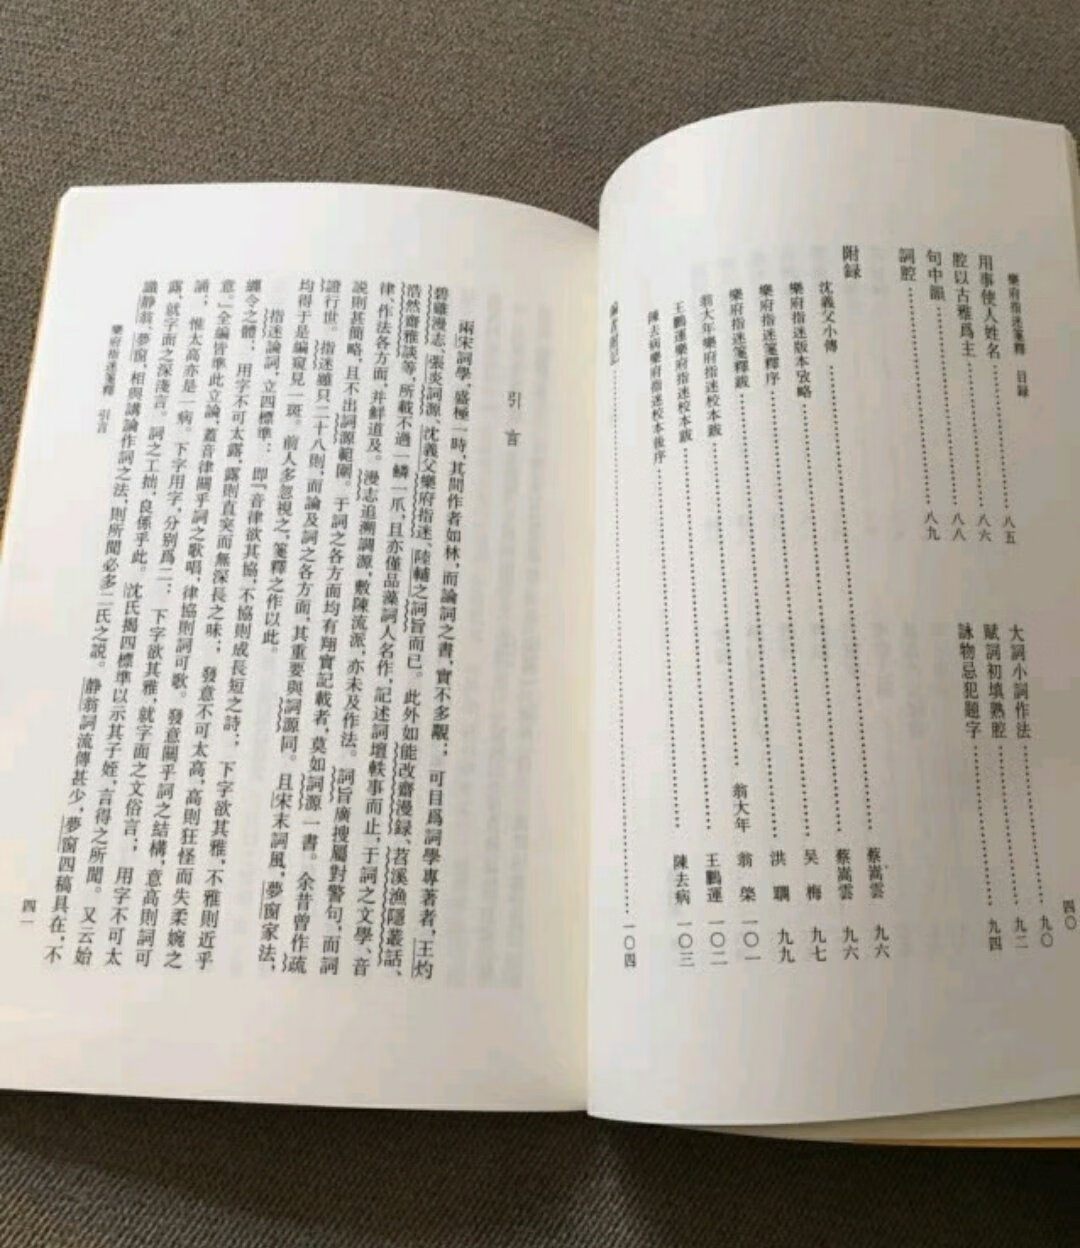 中国古代文学理论批评这套书收录了一些诗话的单行本。购入阅读很方便。